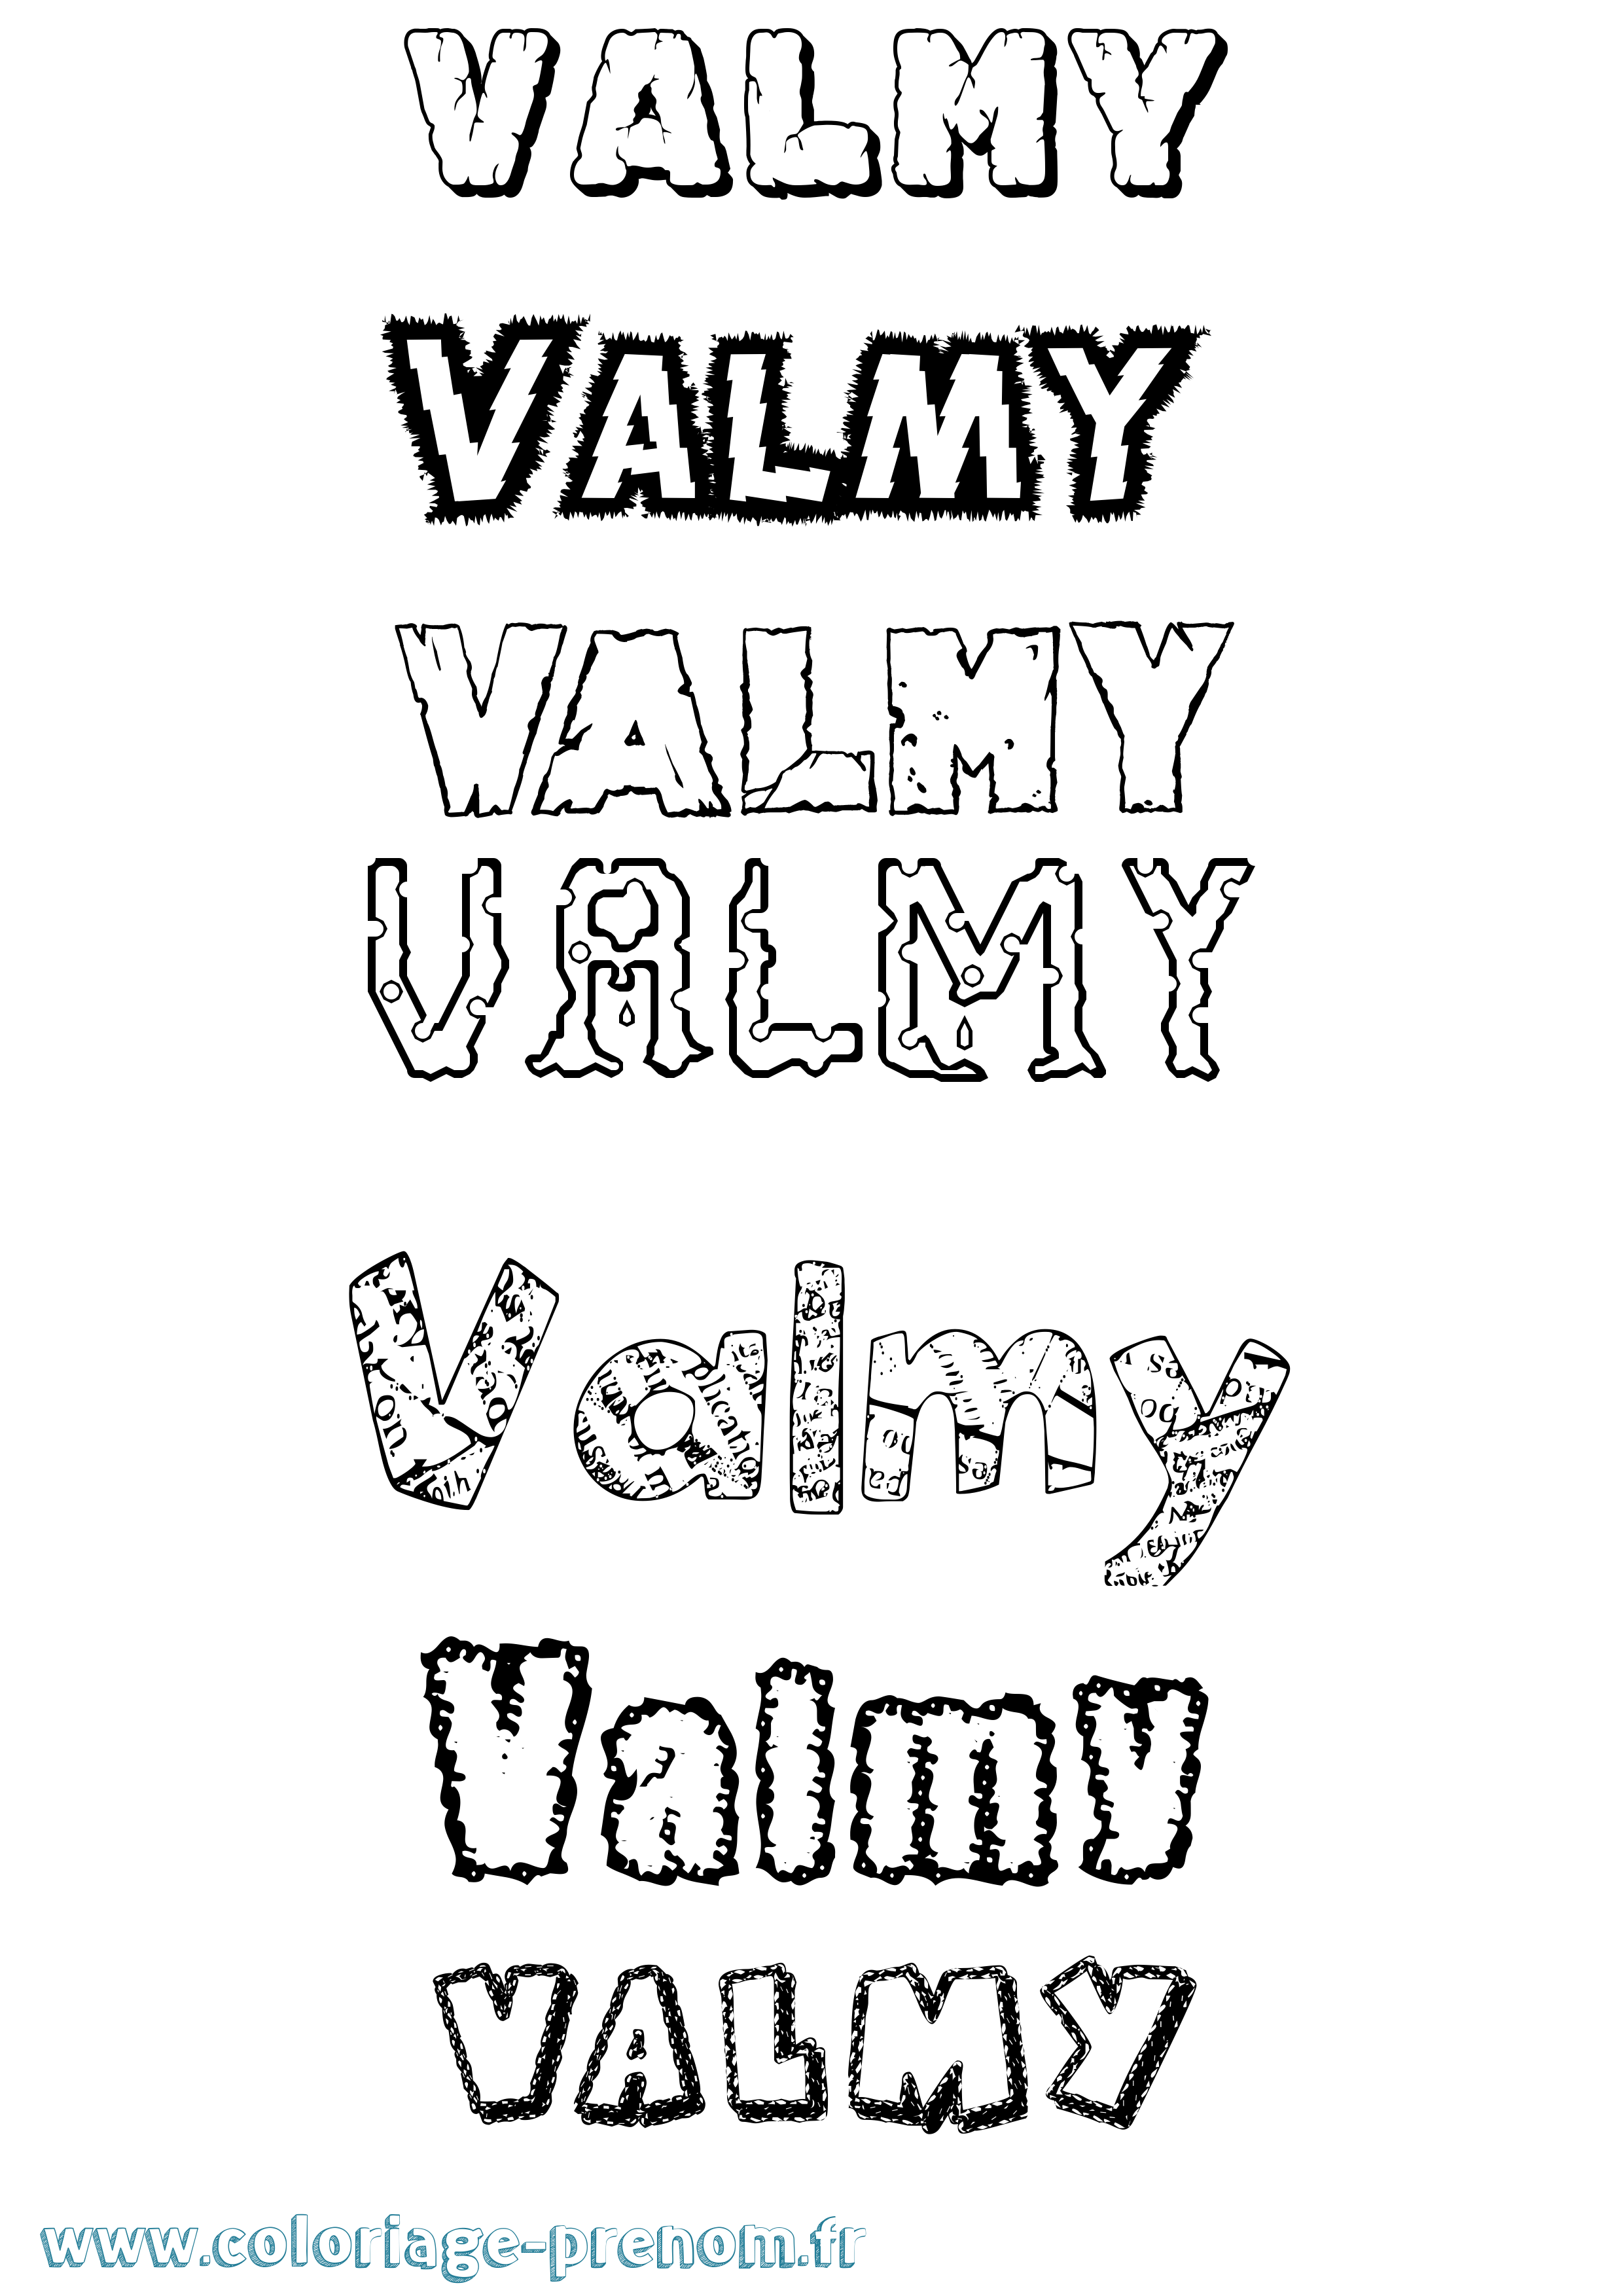 Coloriage prénom Valmy Destructuré